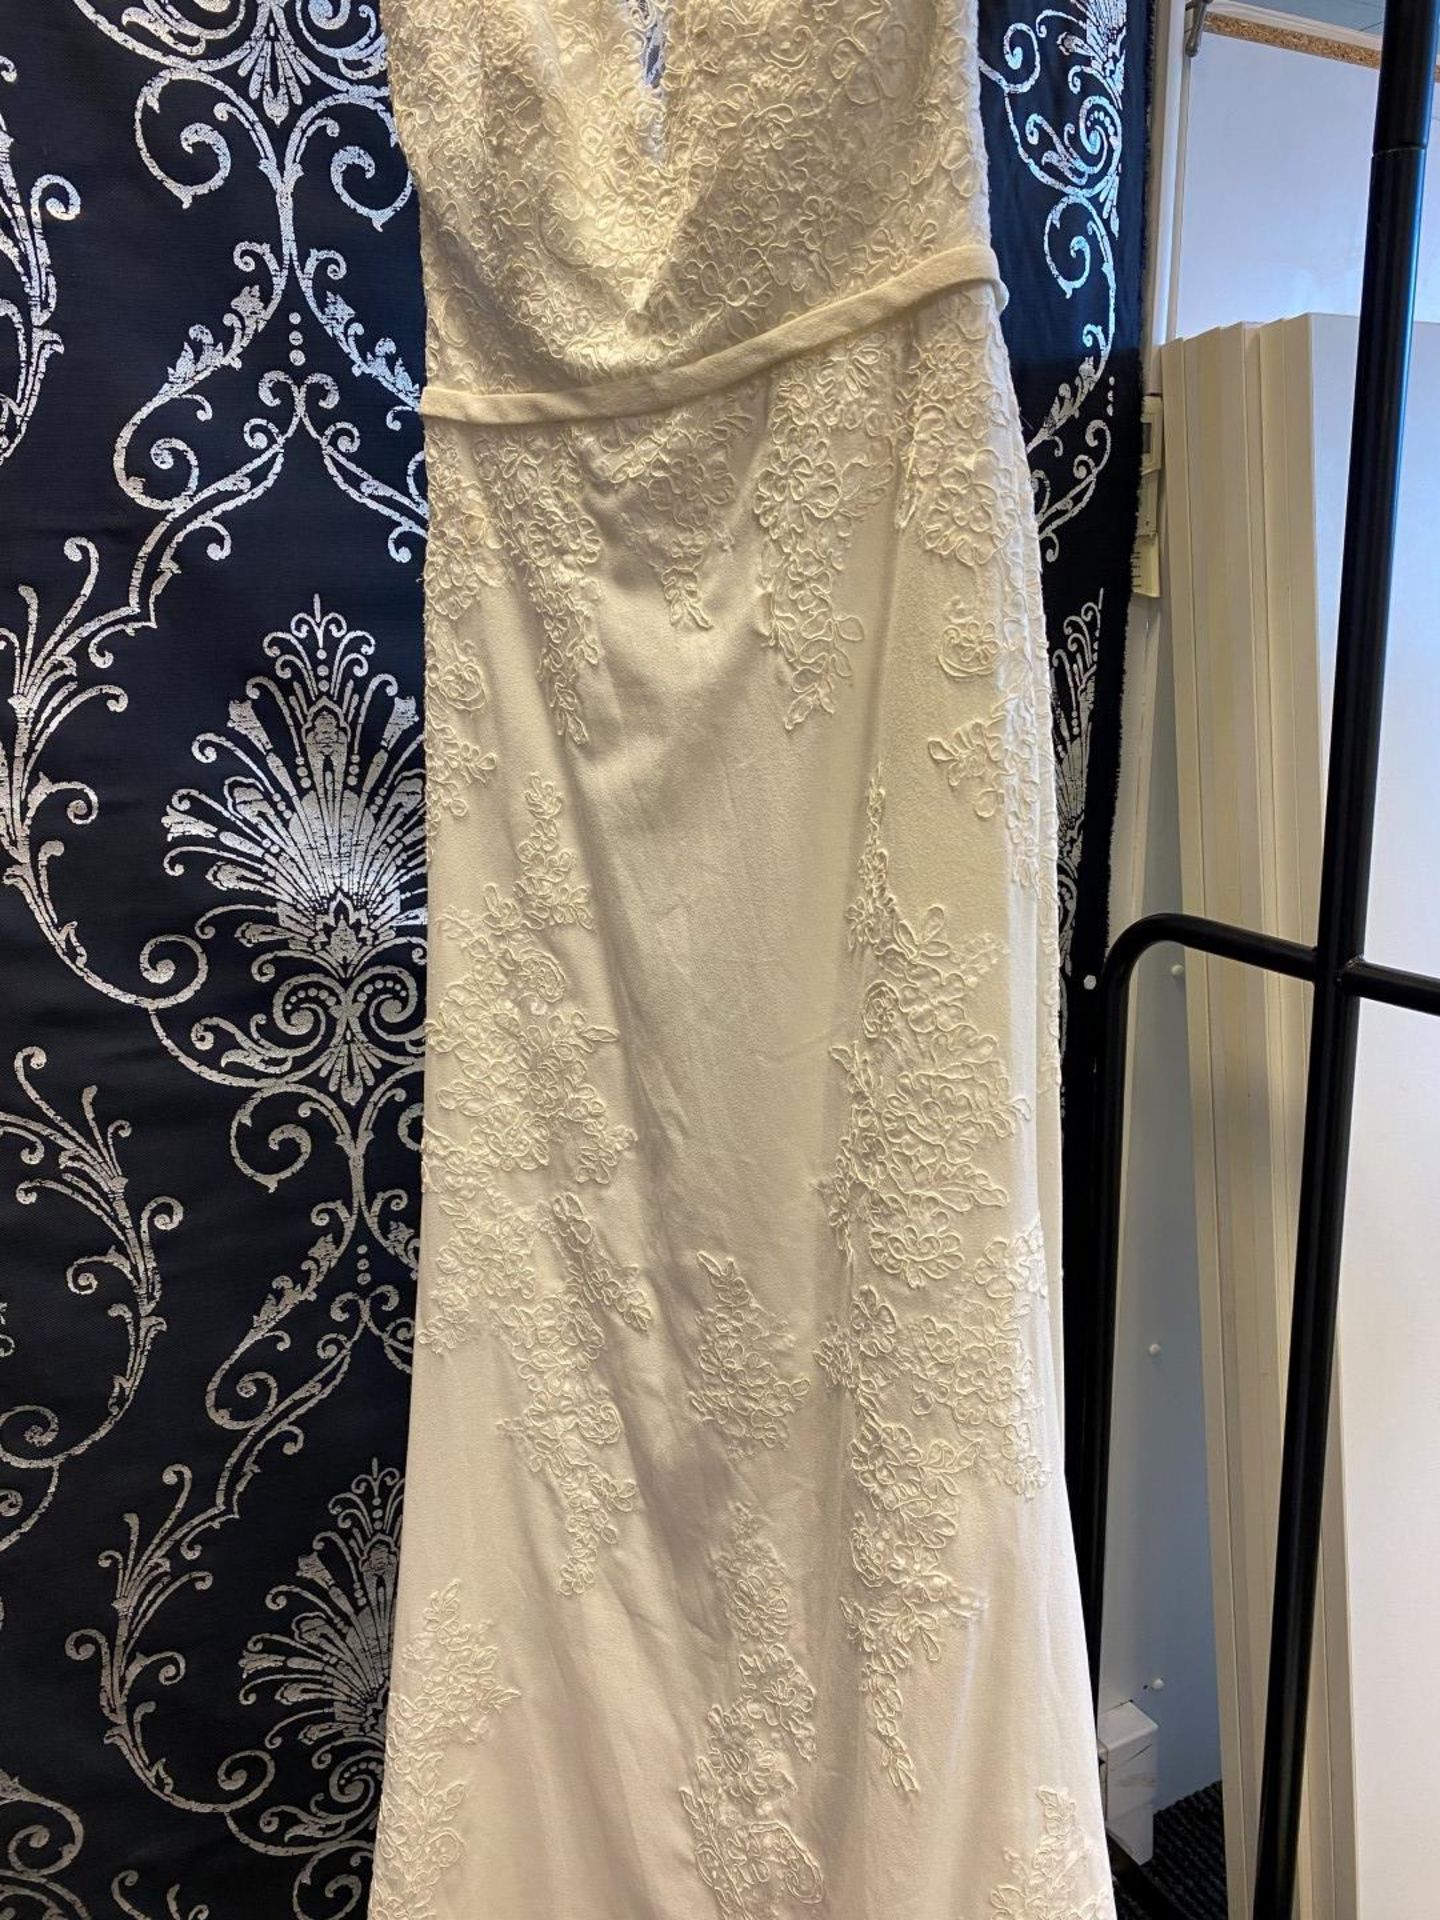 1 x MORI LEE Stunning Chiffon & Lace Biased Cut Designer Wedding Dress Bridal Gown RRP £1,500 UK 12 - Image 4 of 10